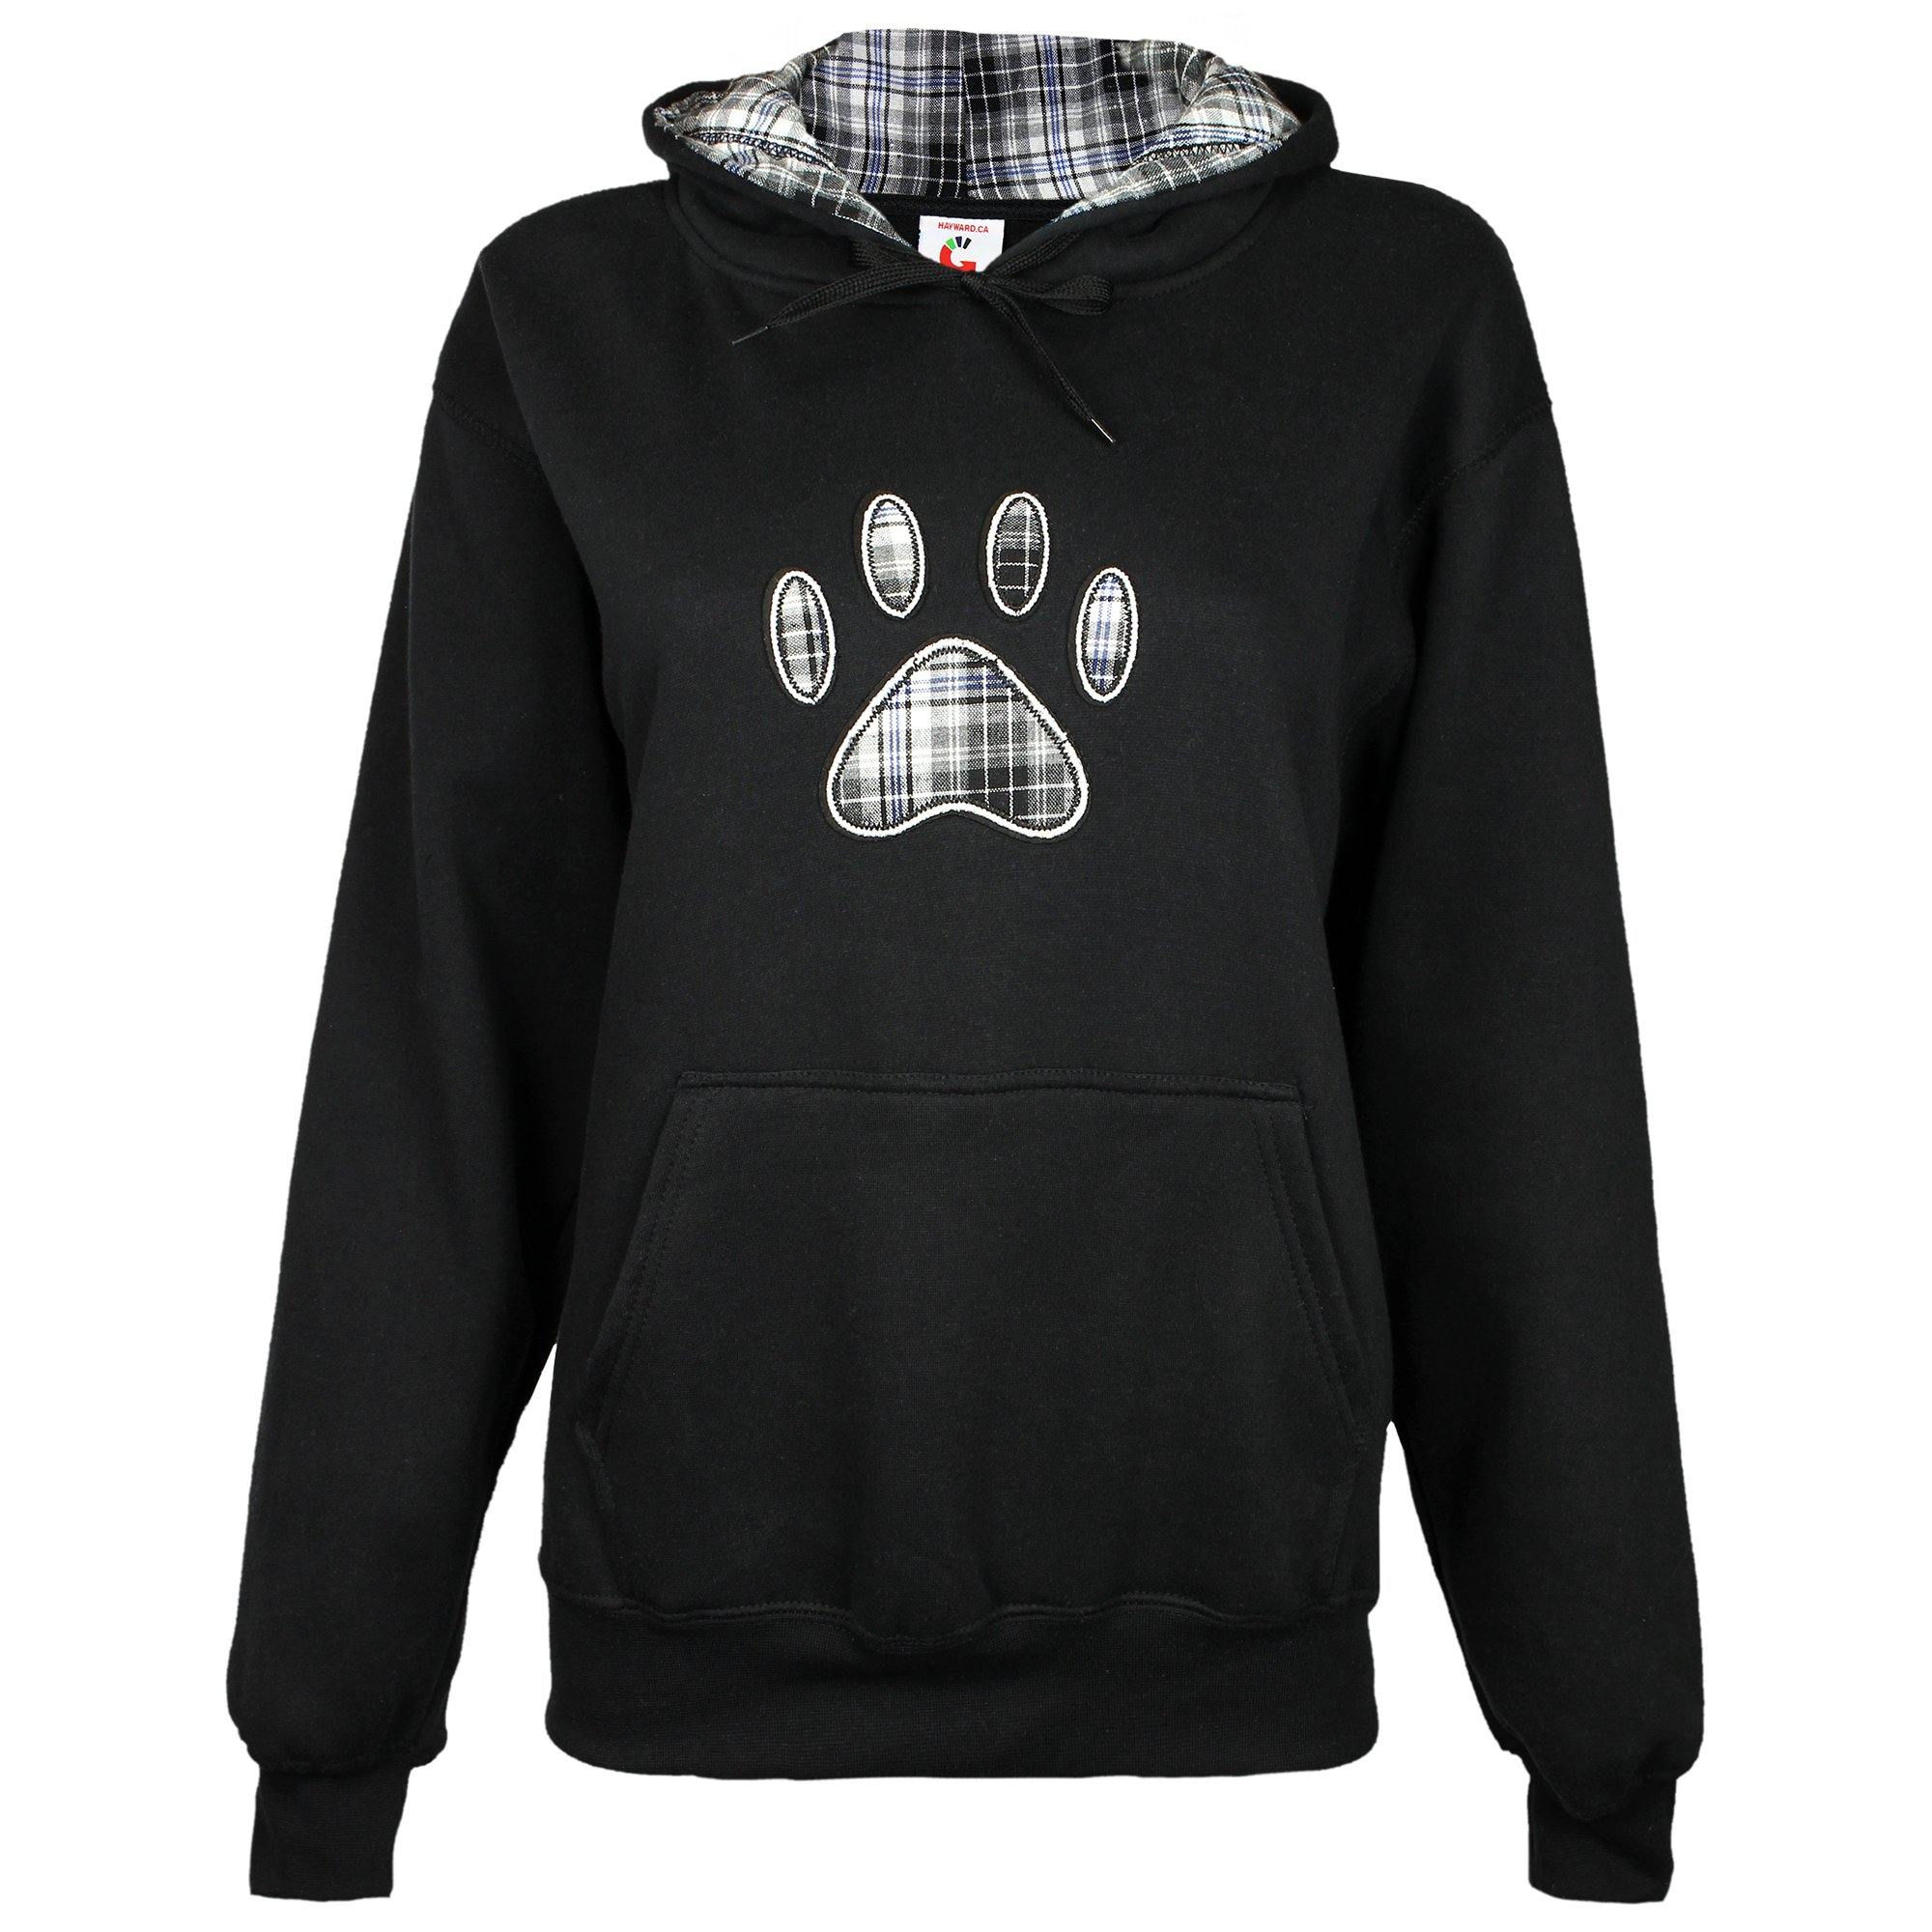 Plaid Paw Hooded Sweatshirt - Black - 3X